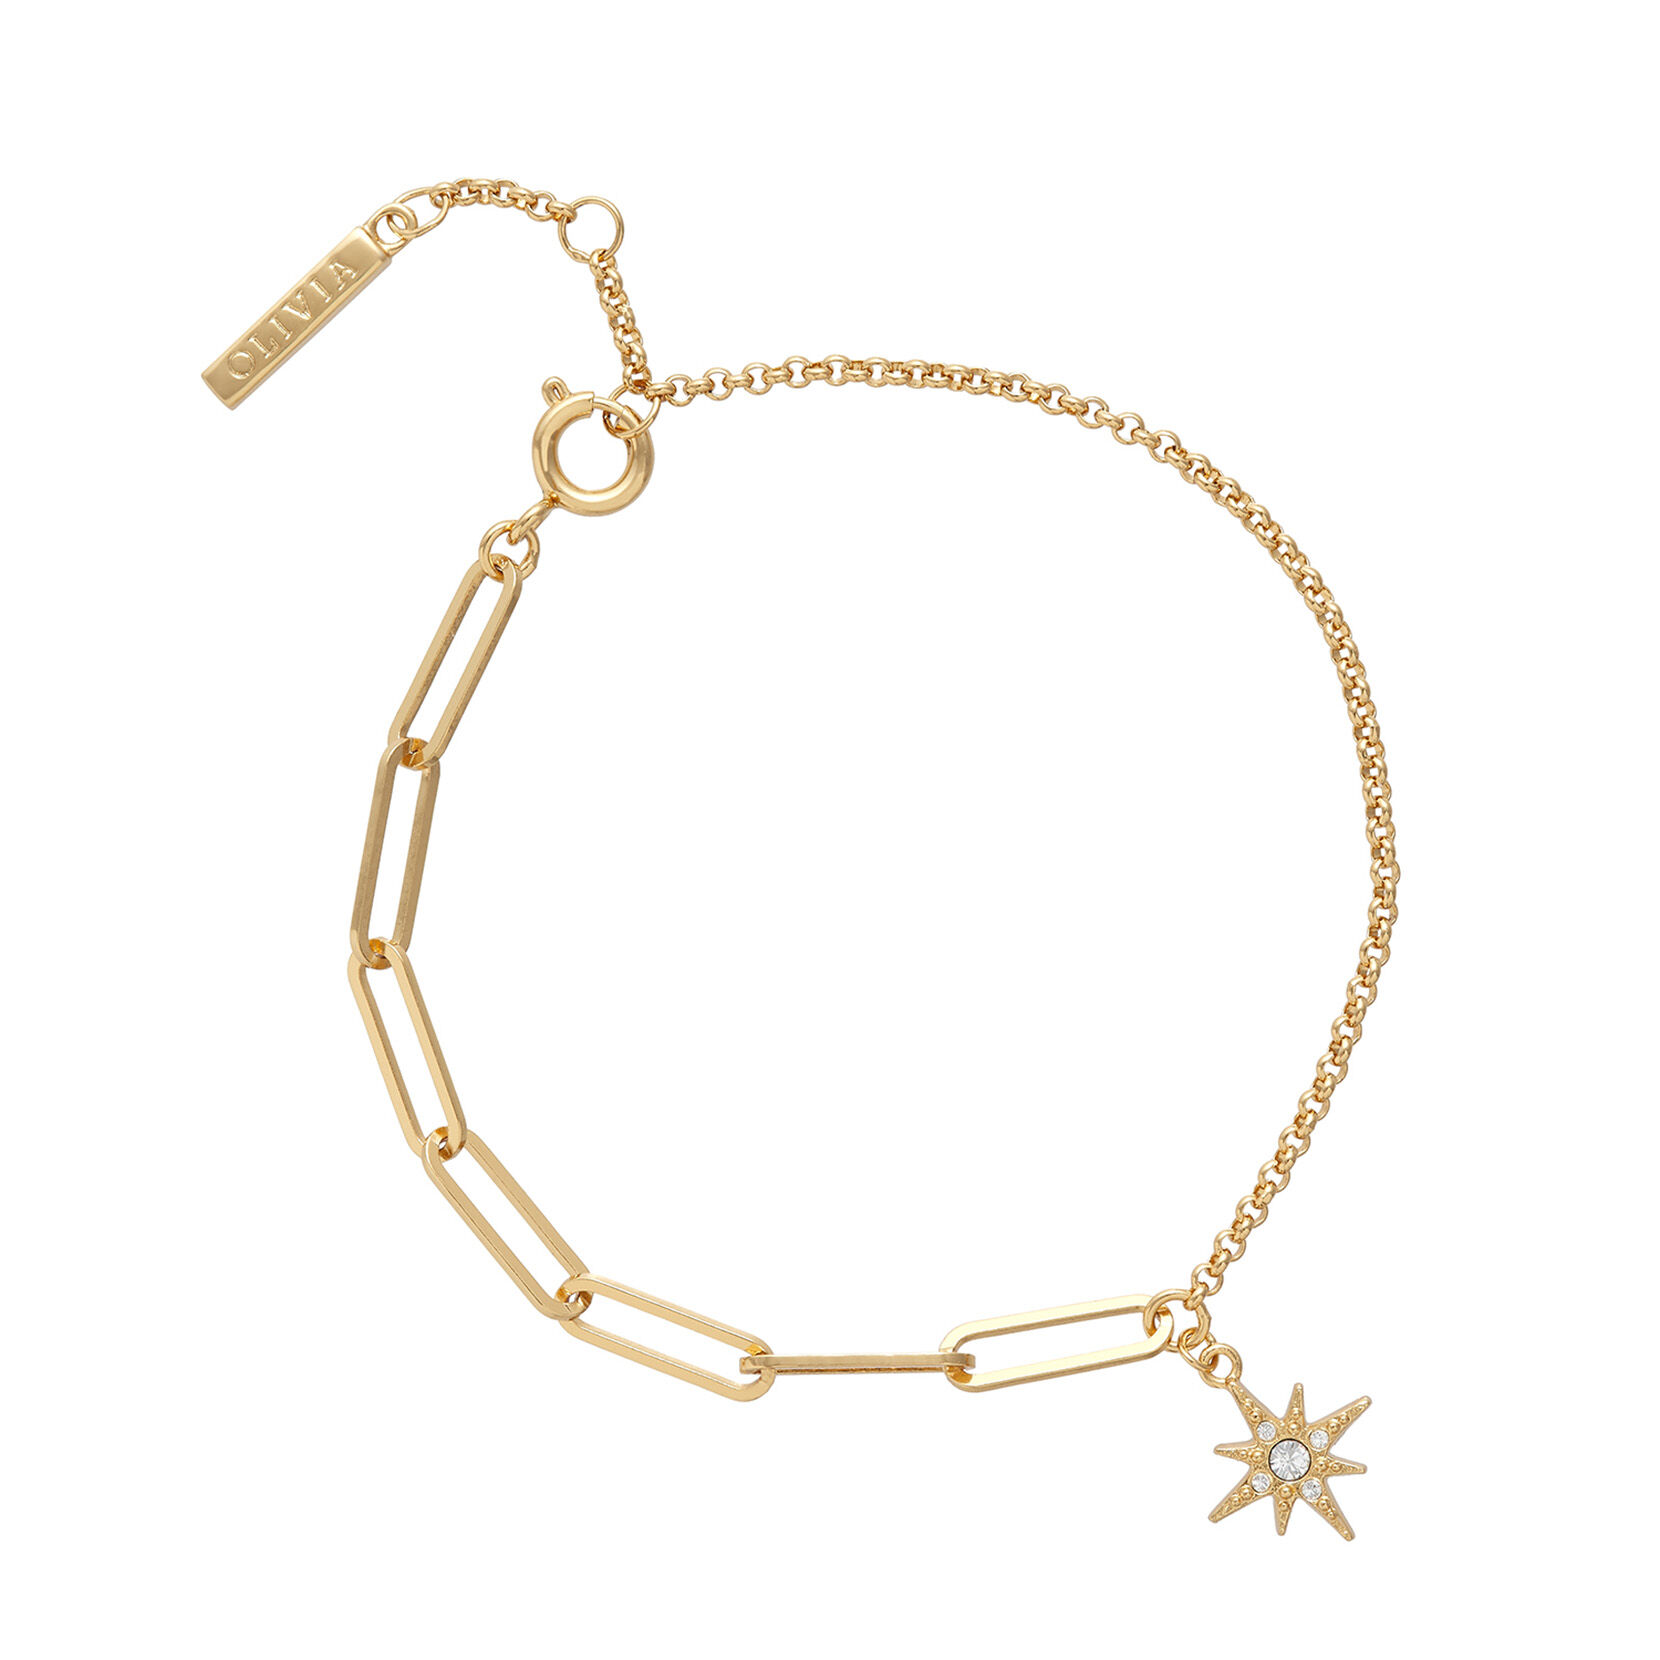 Celestial Gold North Star Mismatch Bracelet